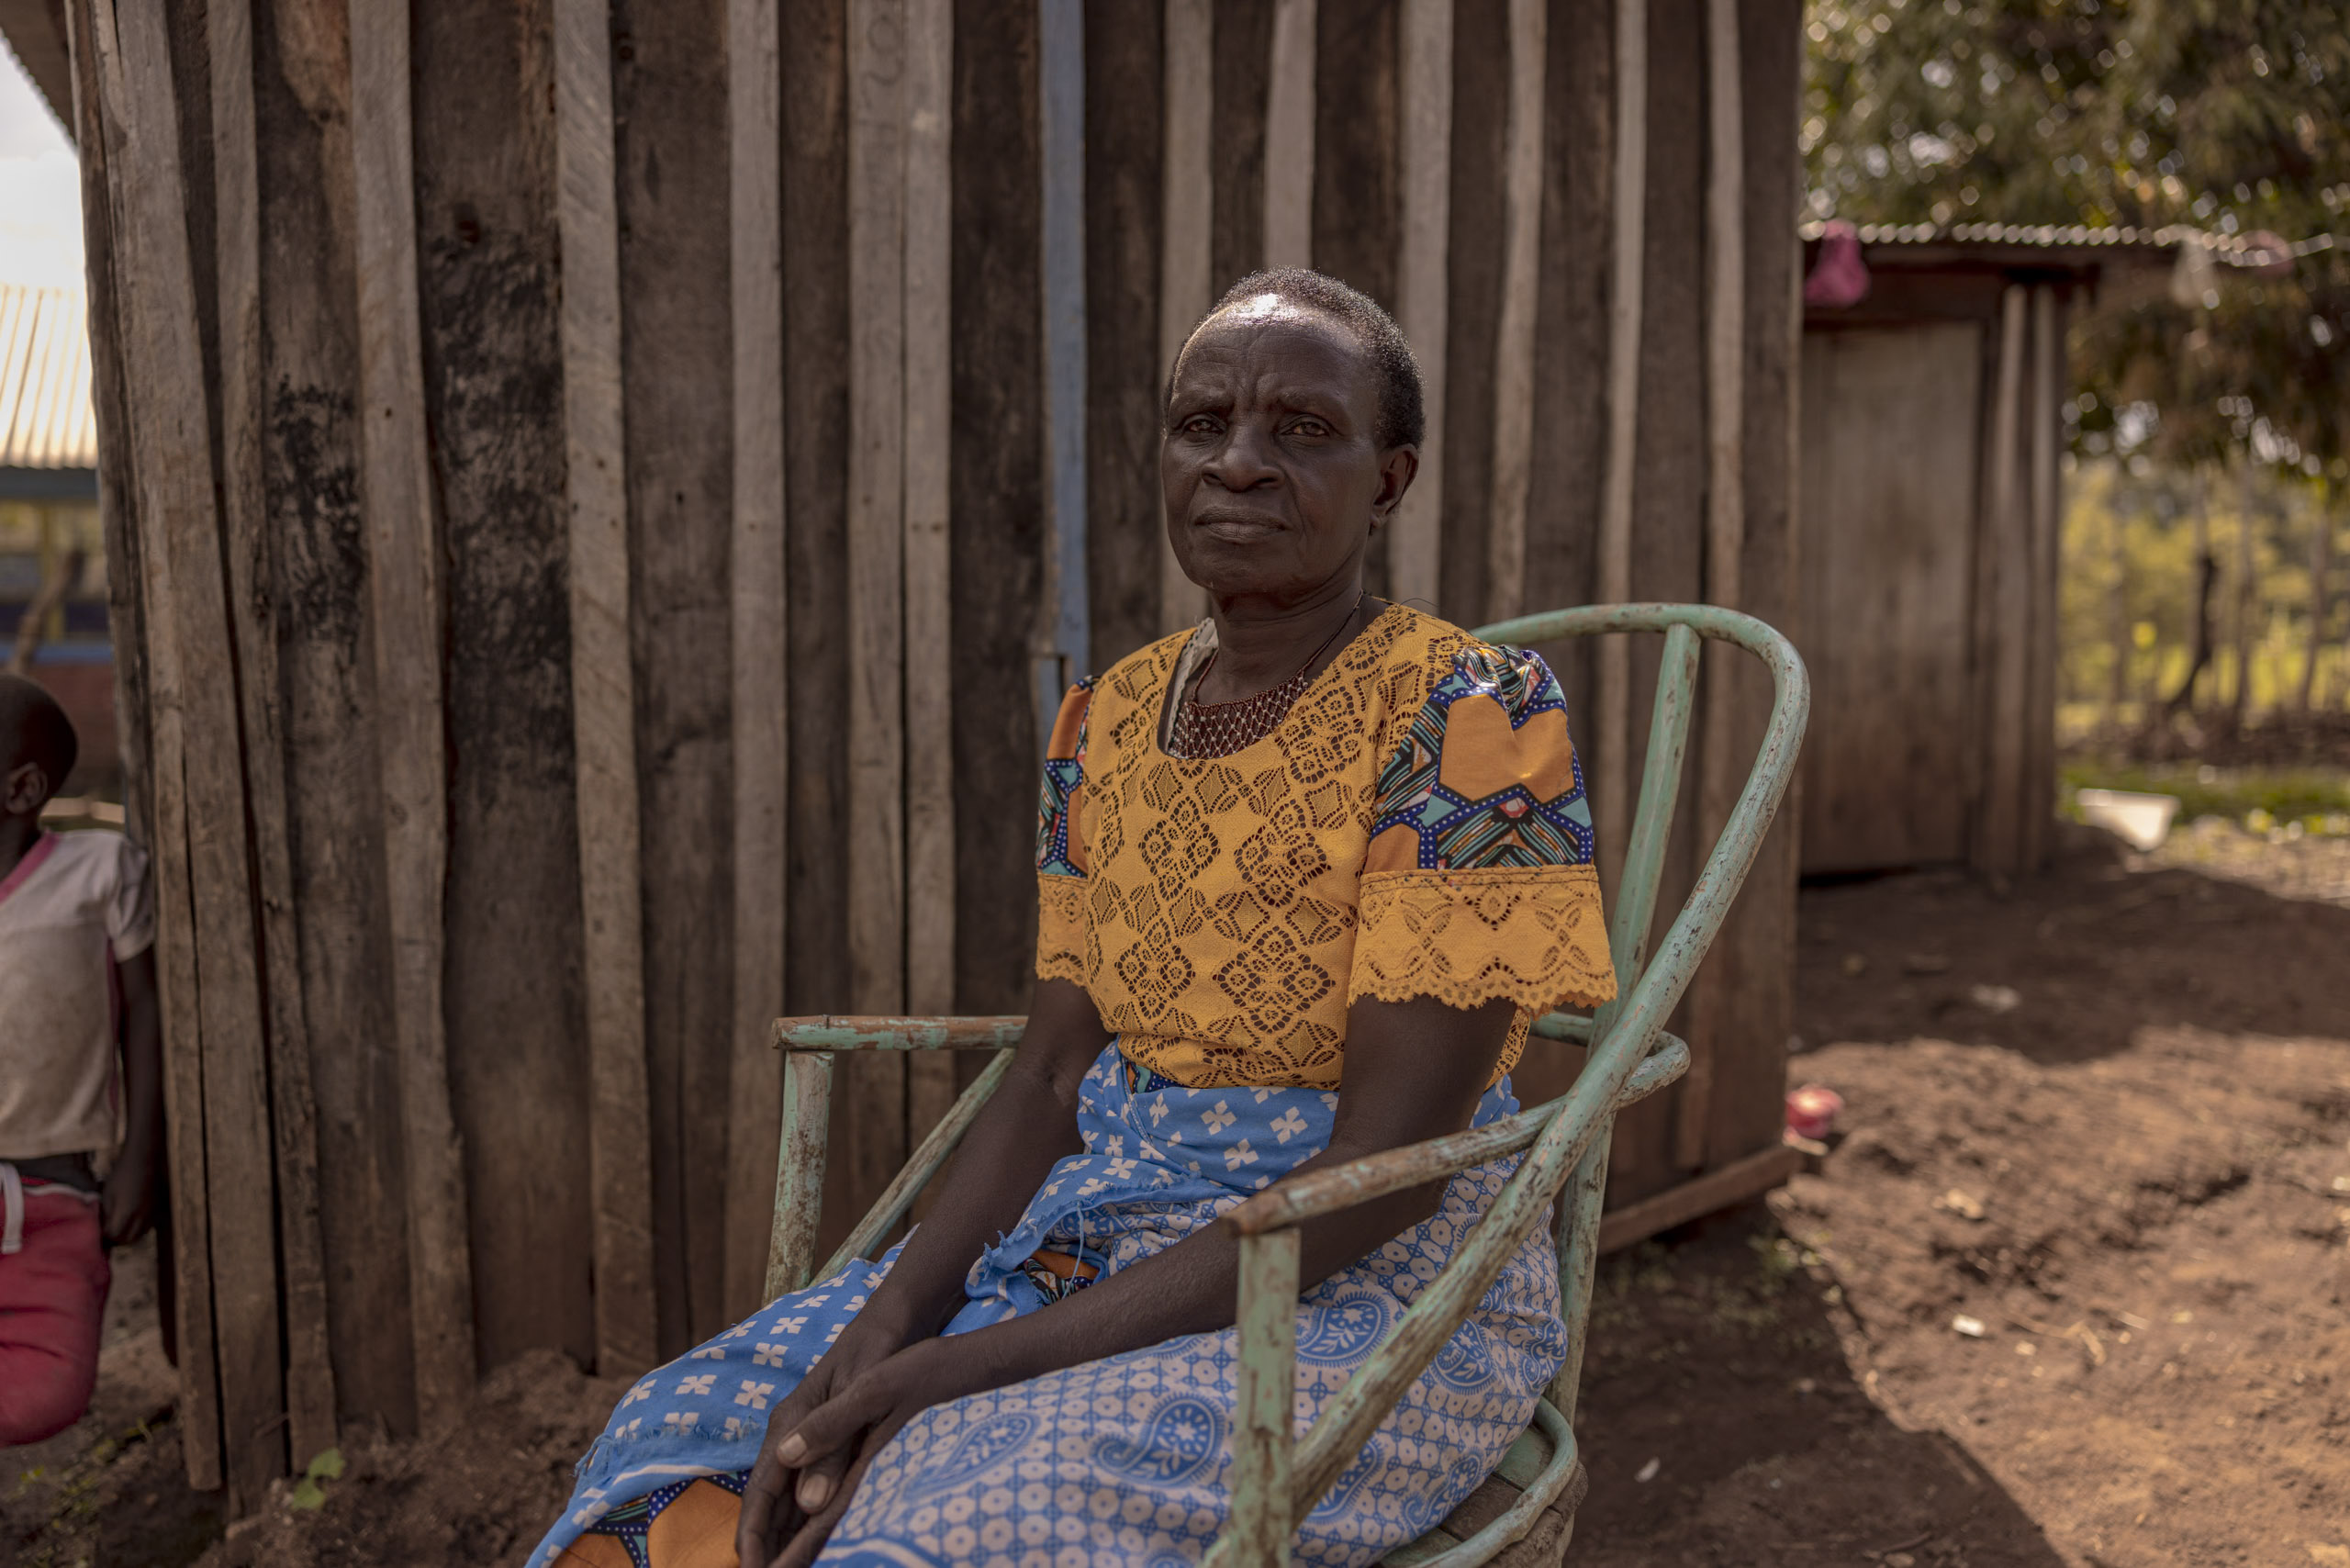 Eine ältere Afrikanerin in farbenfroher Tracht sitzt im Freien auf einem Metallstuhl, im Hintergrund sind Holzlatten und ein kleines Kind zu sehen. © Fotografie Tomas Rodriguez